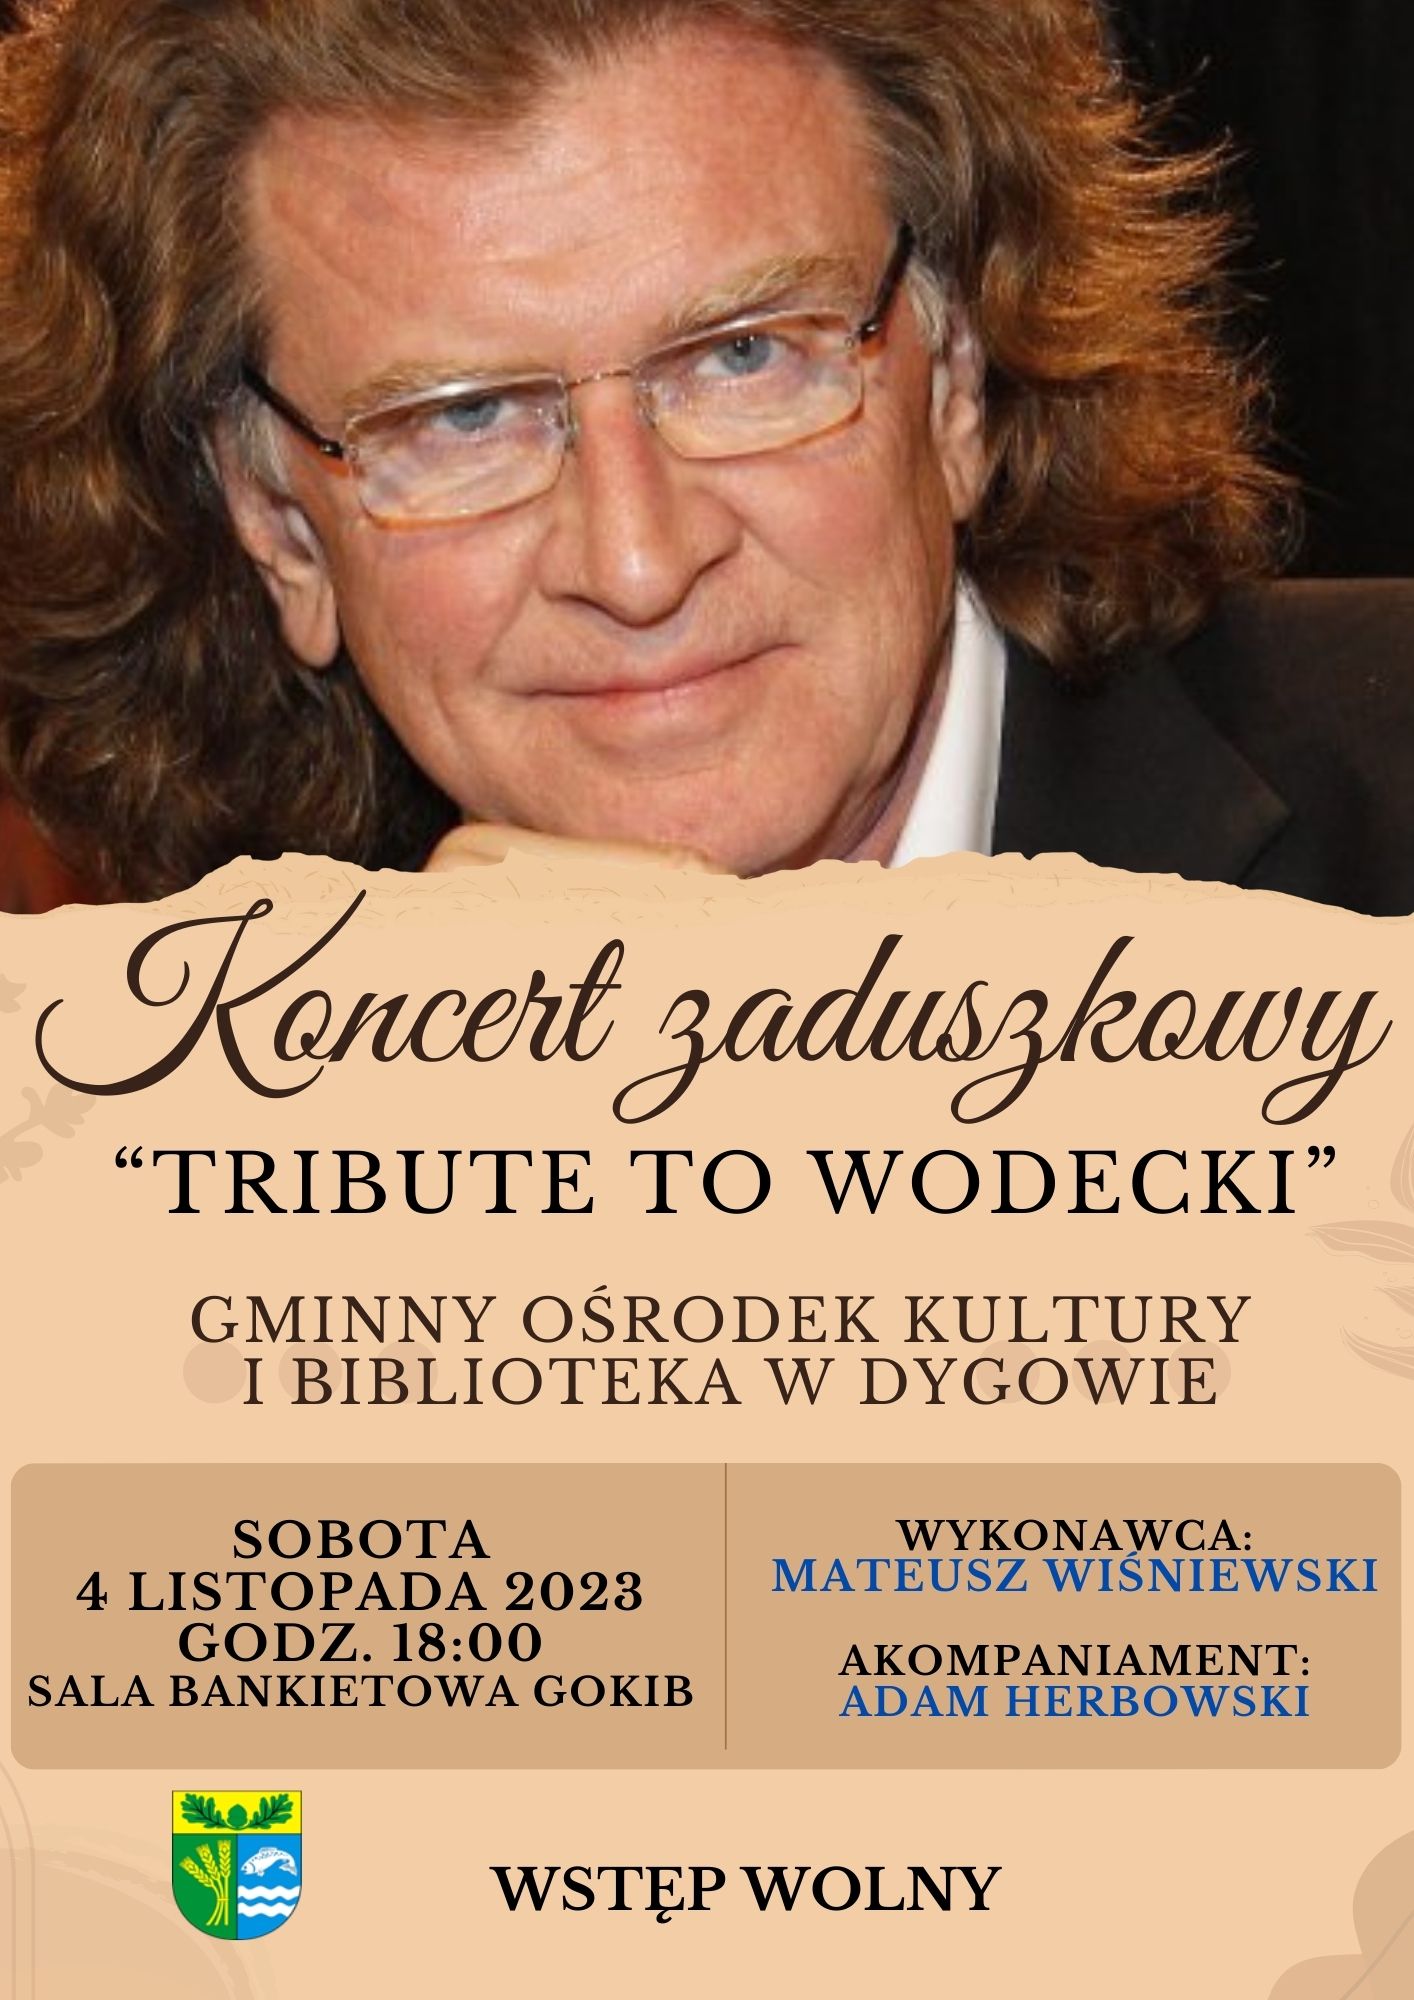 Koncert zaduszkowy "Tribute to Wodecki"